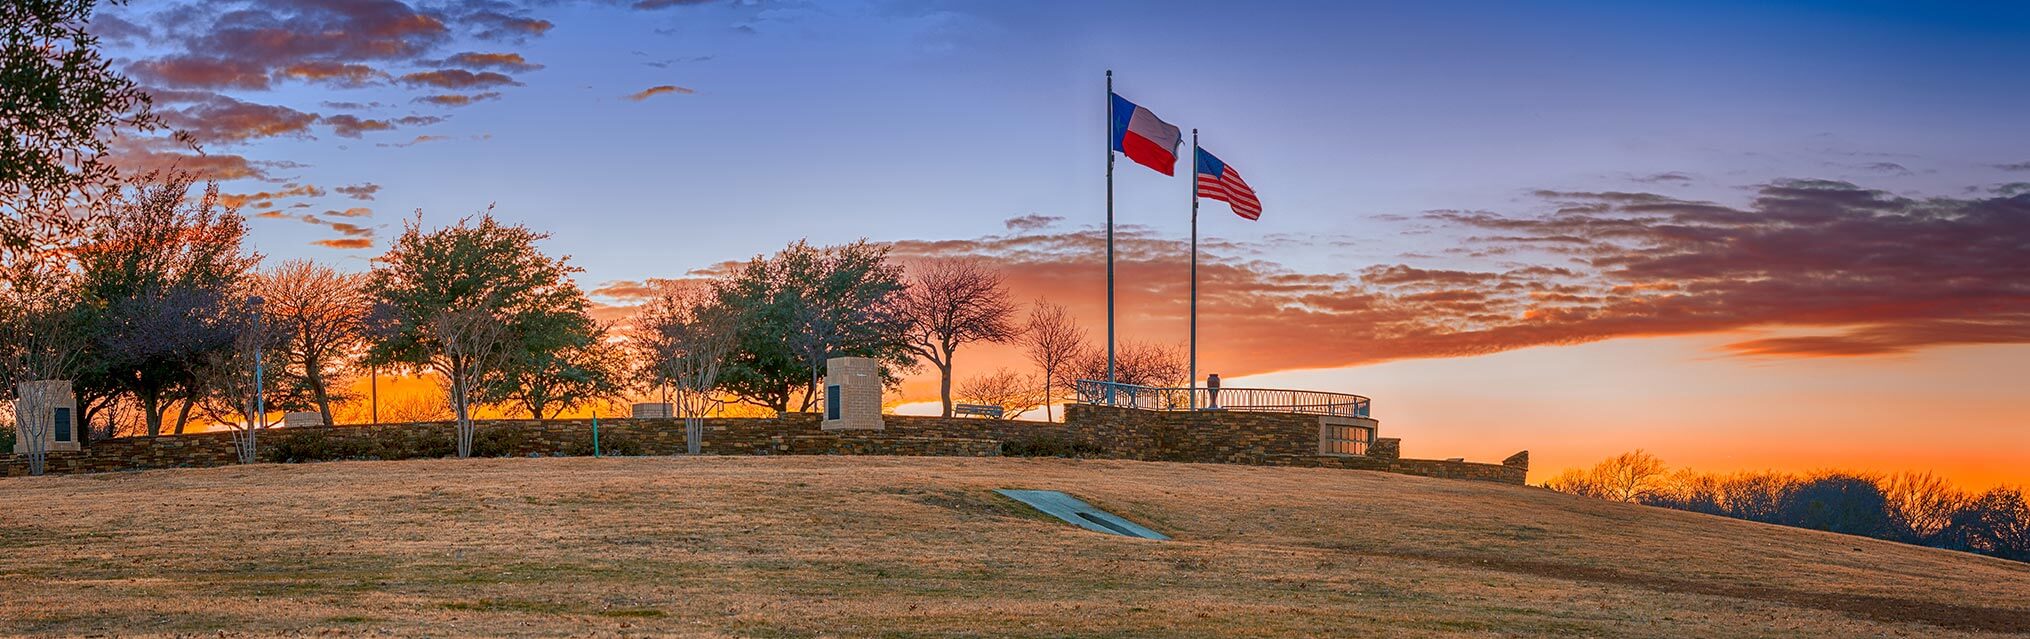 ¿Buscas una compañía de luz en Frisco, Texas?
